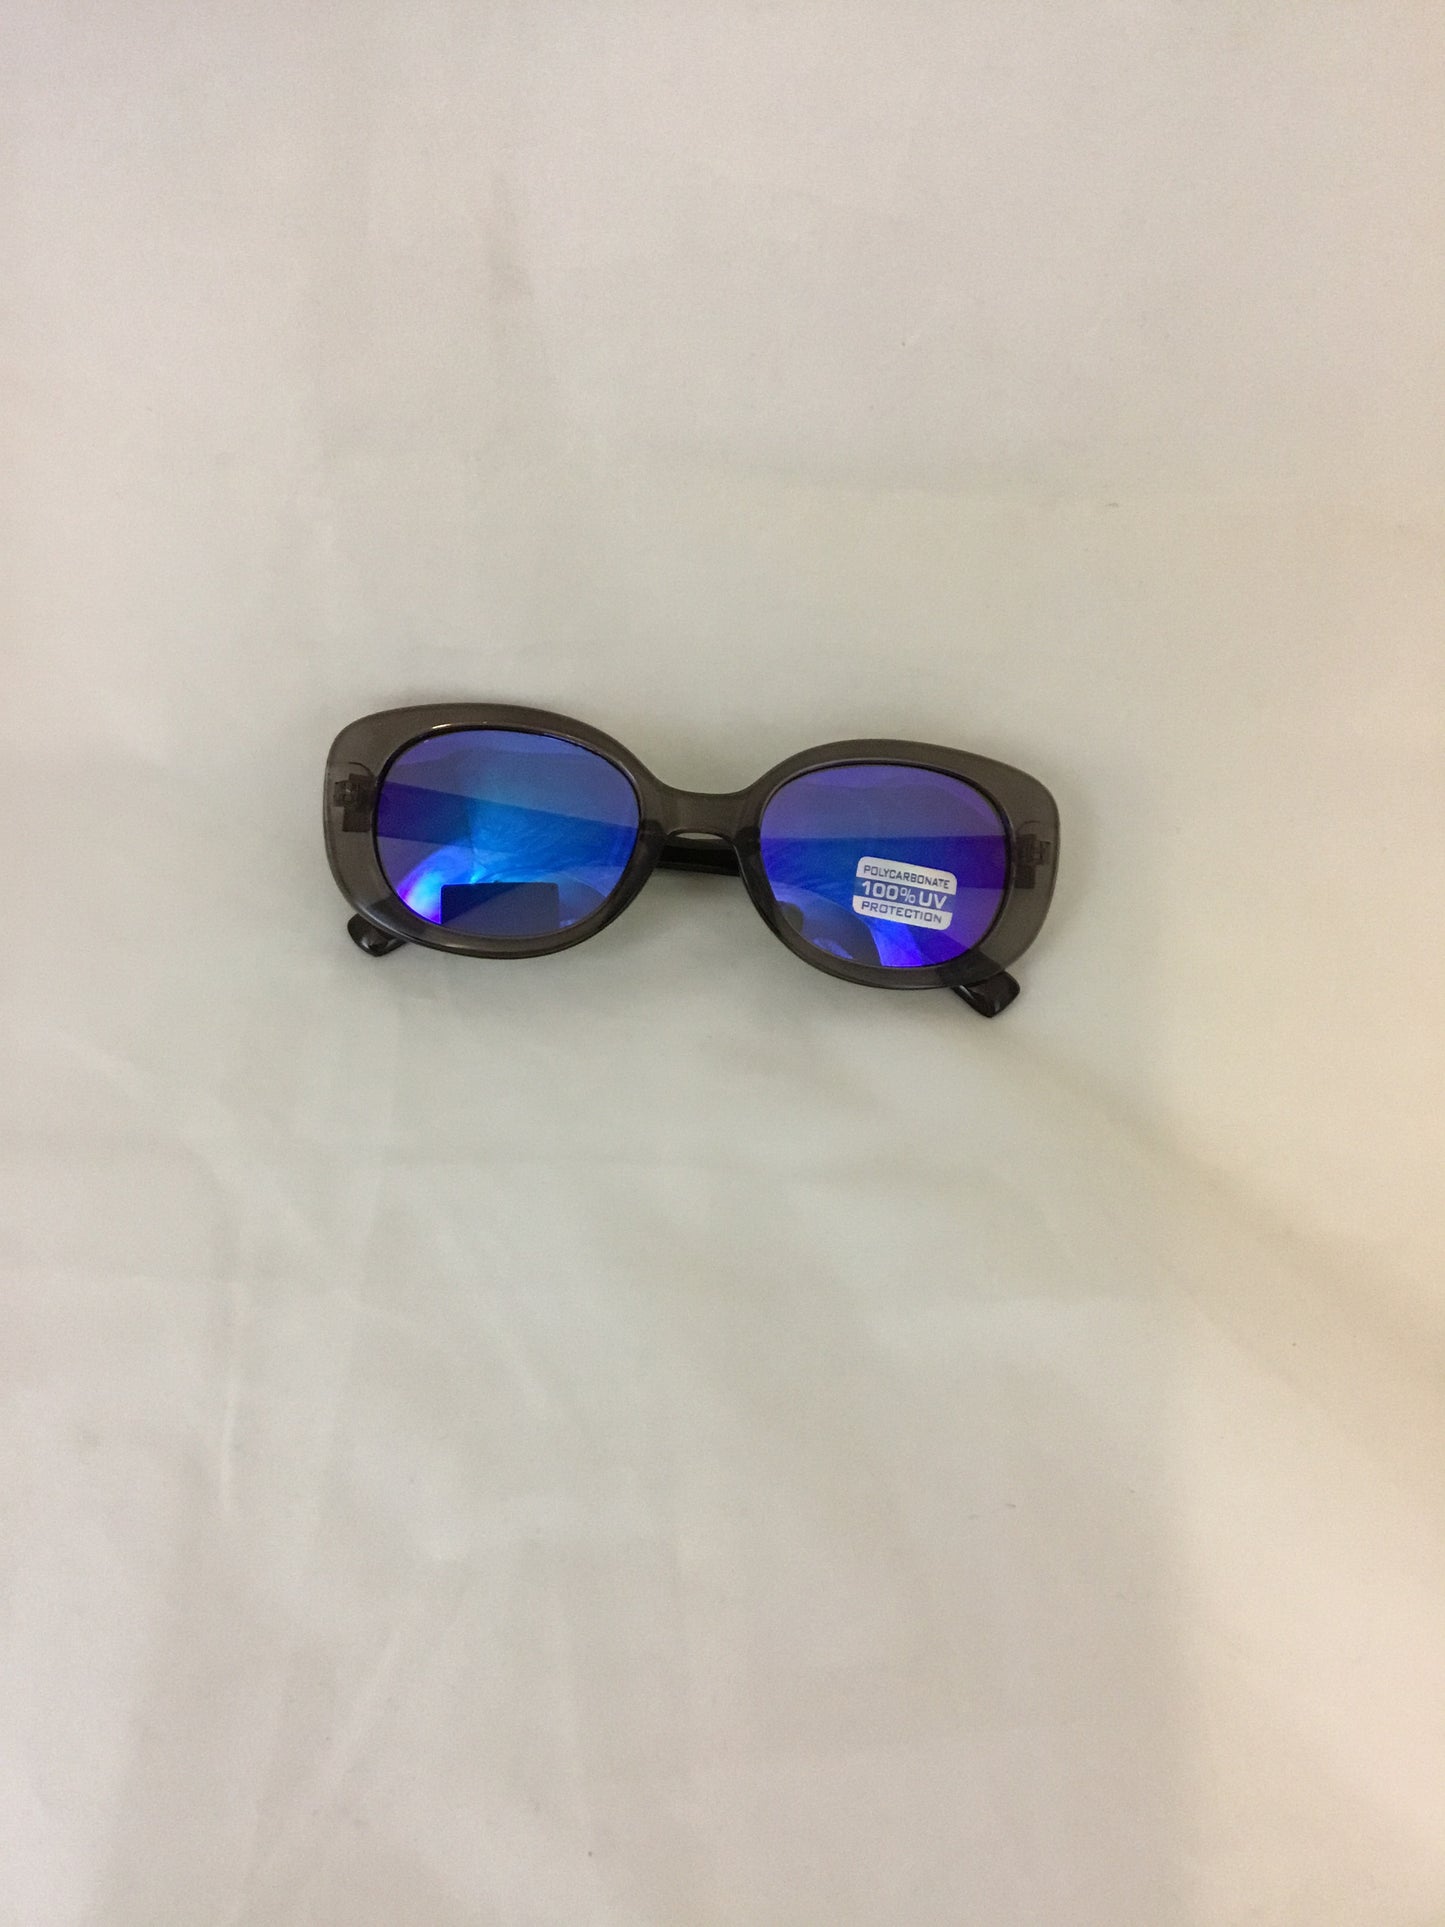 Misty Blue Retro 1990’s Clout Goggles Mirror Sunglasses